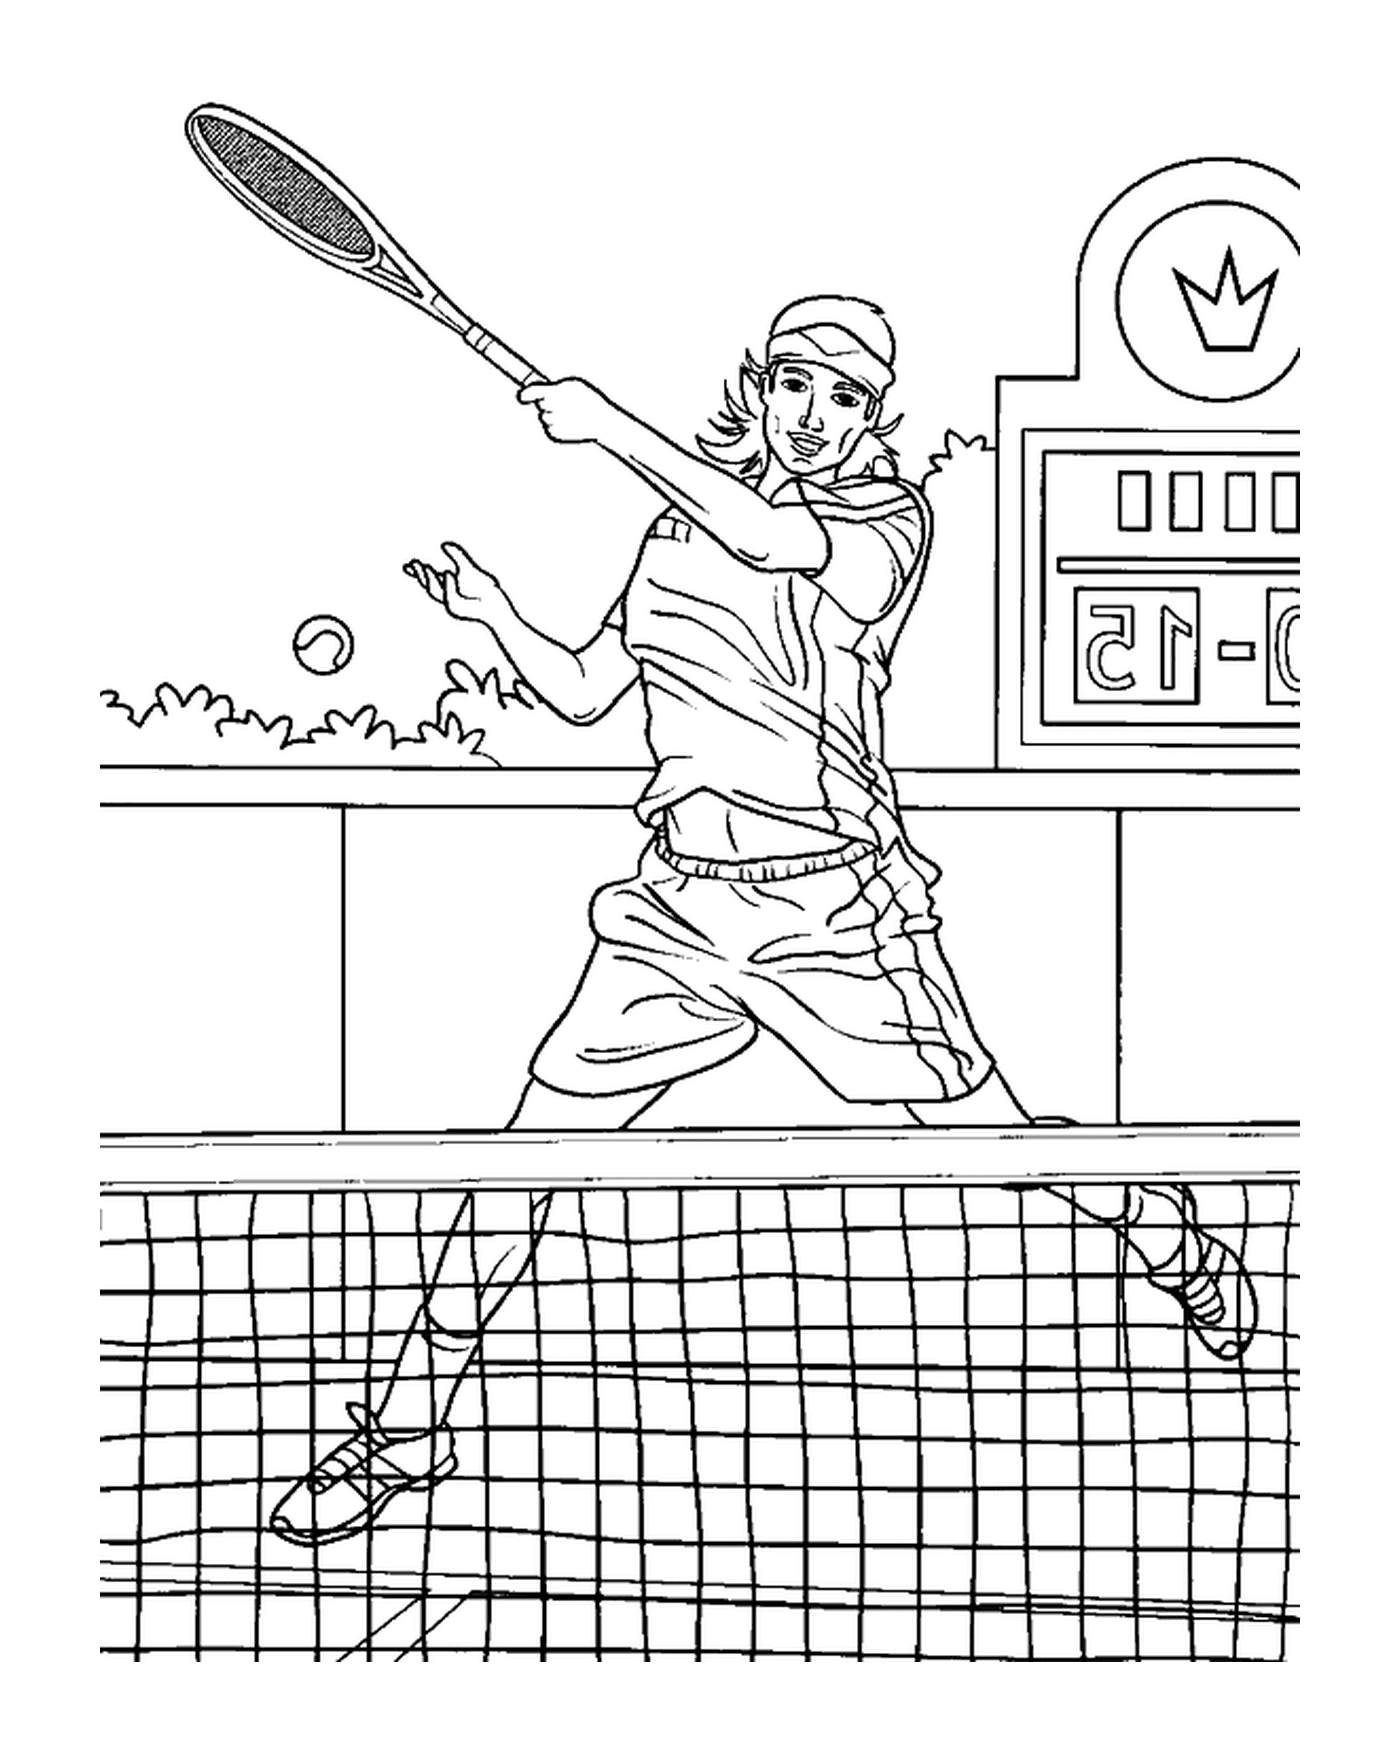  Ein animiertes Tennis Spiel 